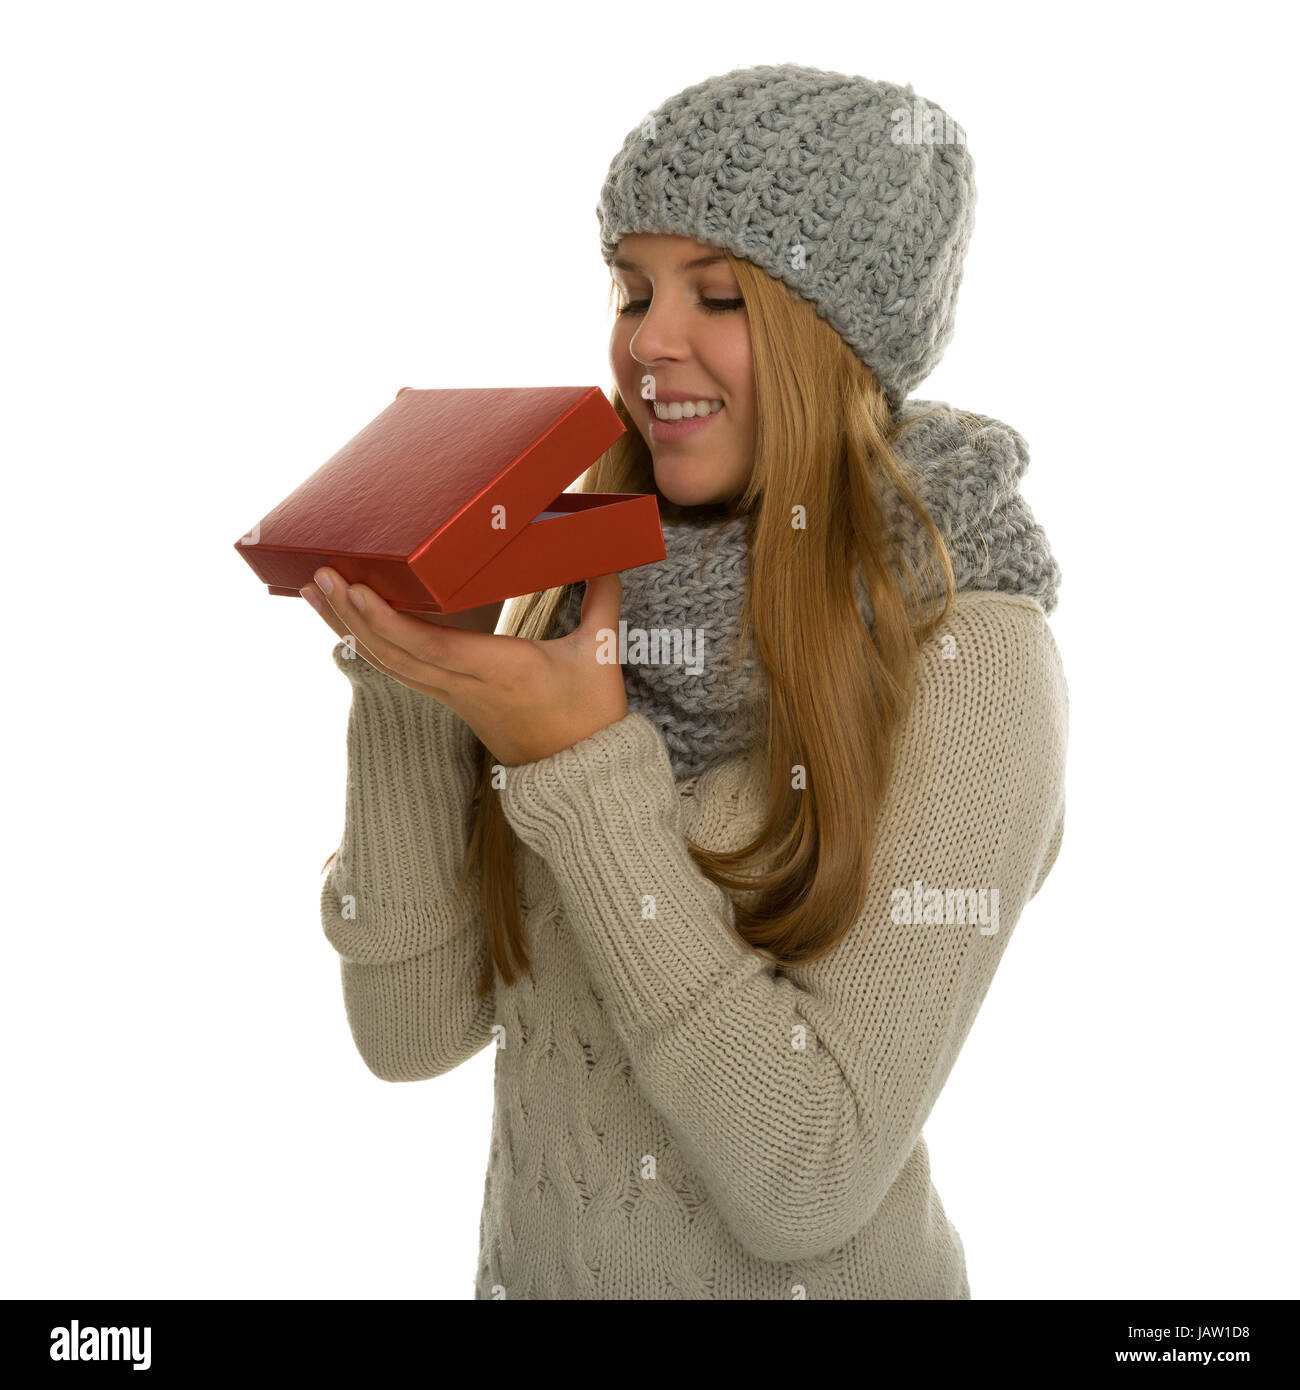 Junge Frau / Mädchen trägt Strickware und schaut erwartungsvoll in eine Geschenkverpackung. Vielleicht eine Überraschung zu Weihnachten oder ein Geschenk im neuen Jahr Stock Photo